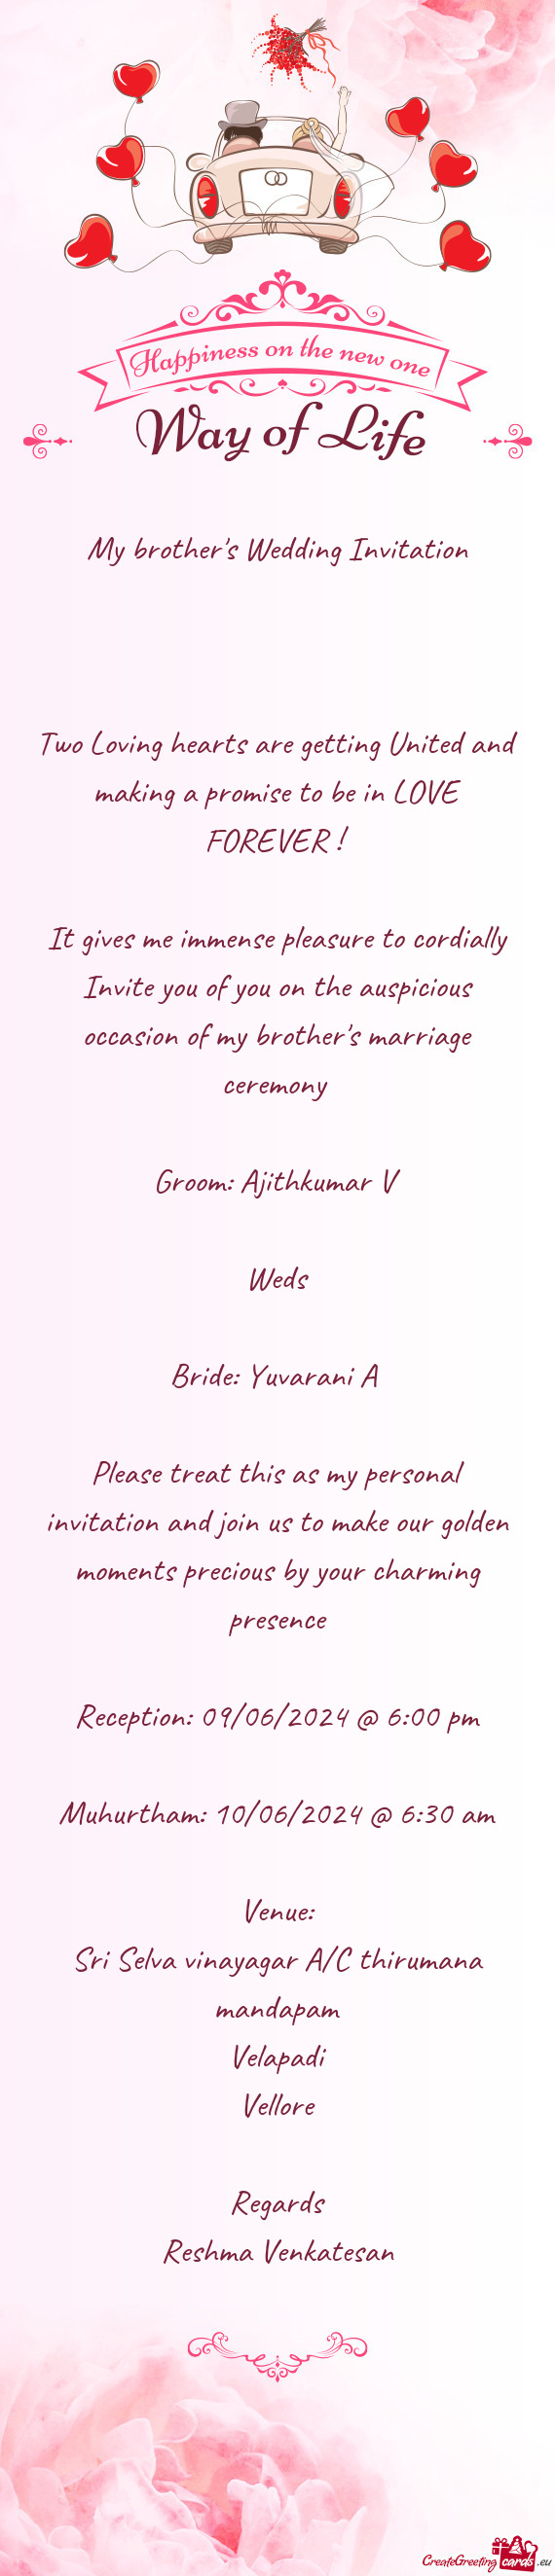 's marriage ceremony